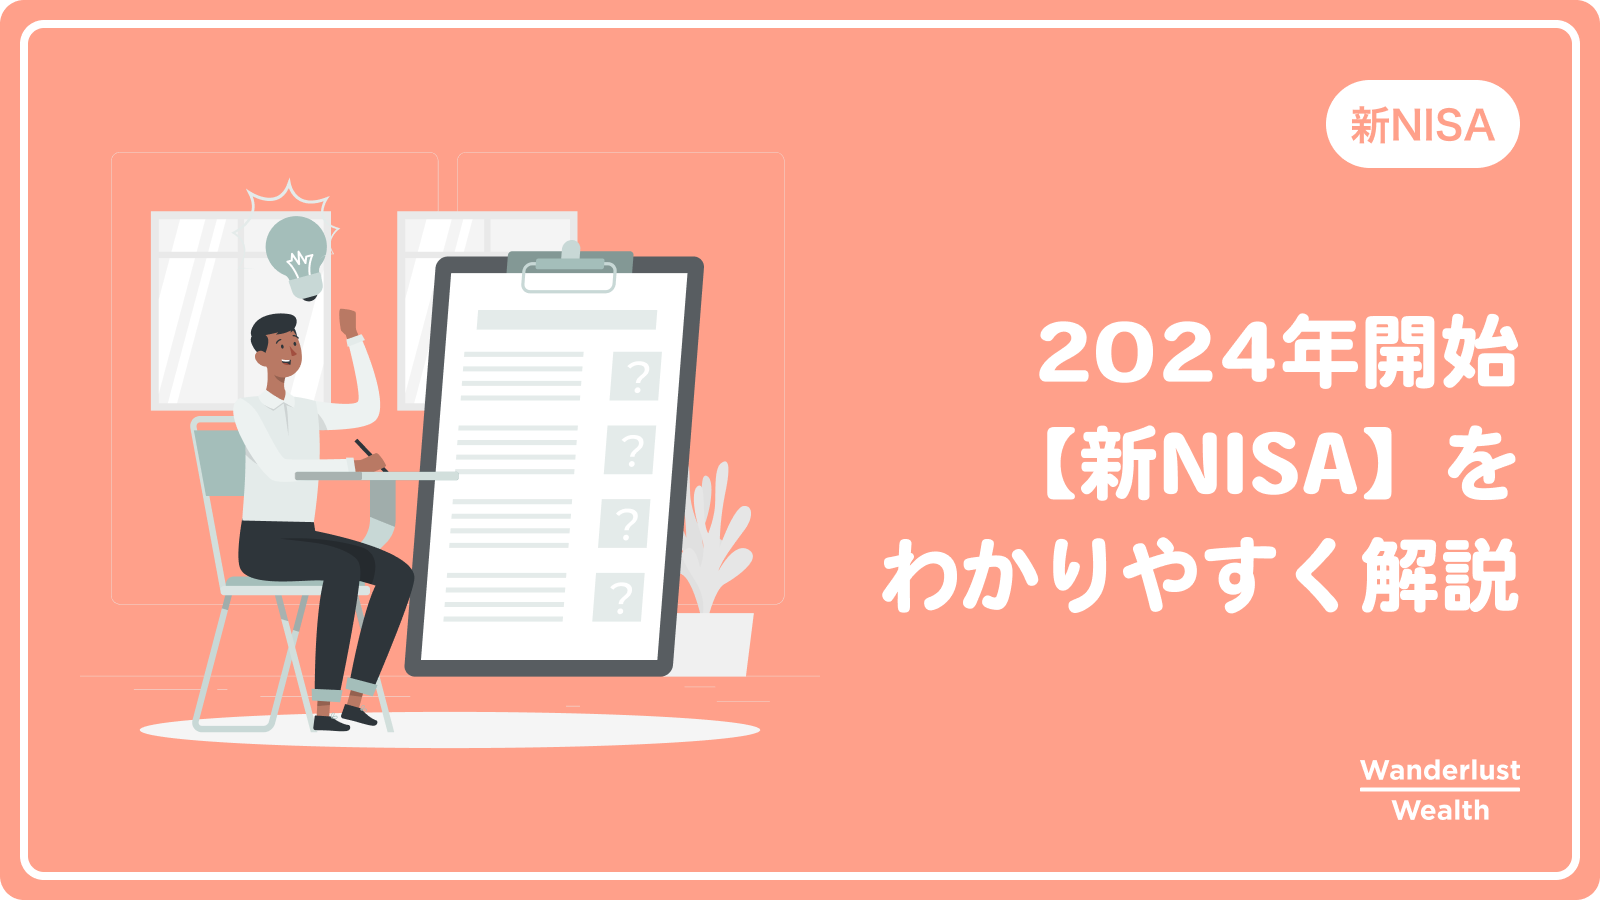 ｢新NISA｣の仕組みをわかりやすく解説【2024年開始】